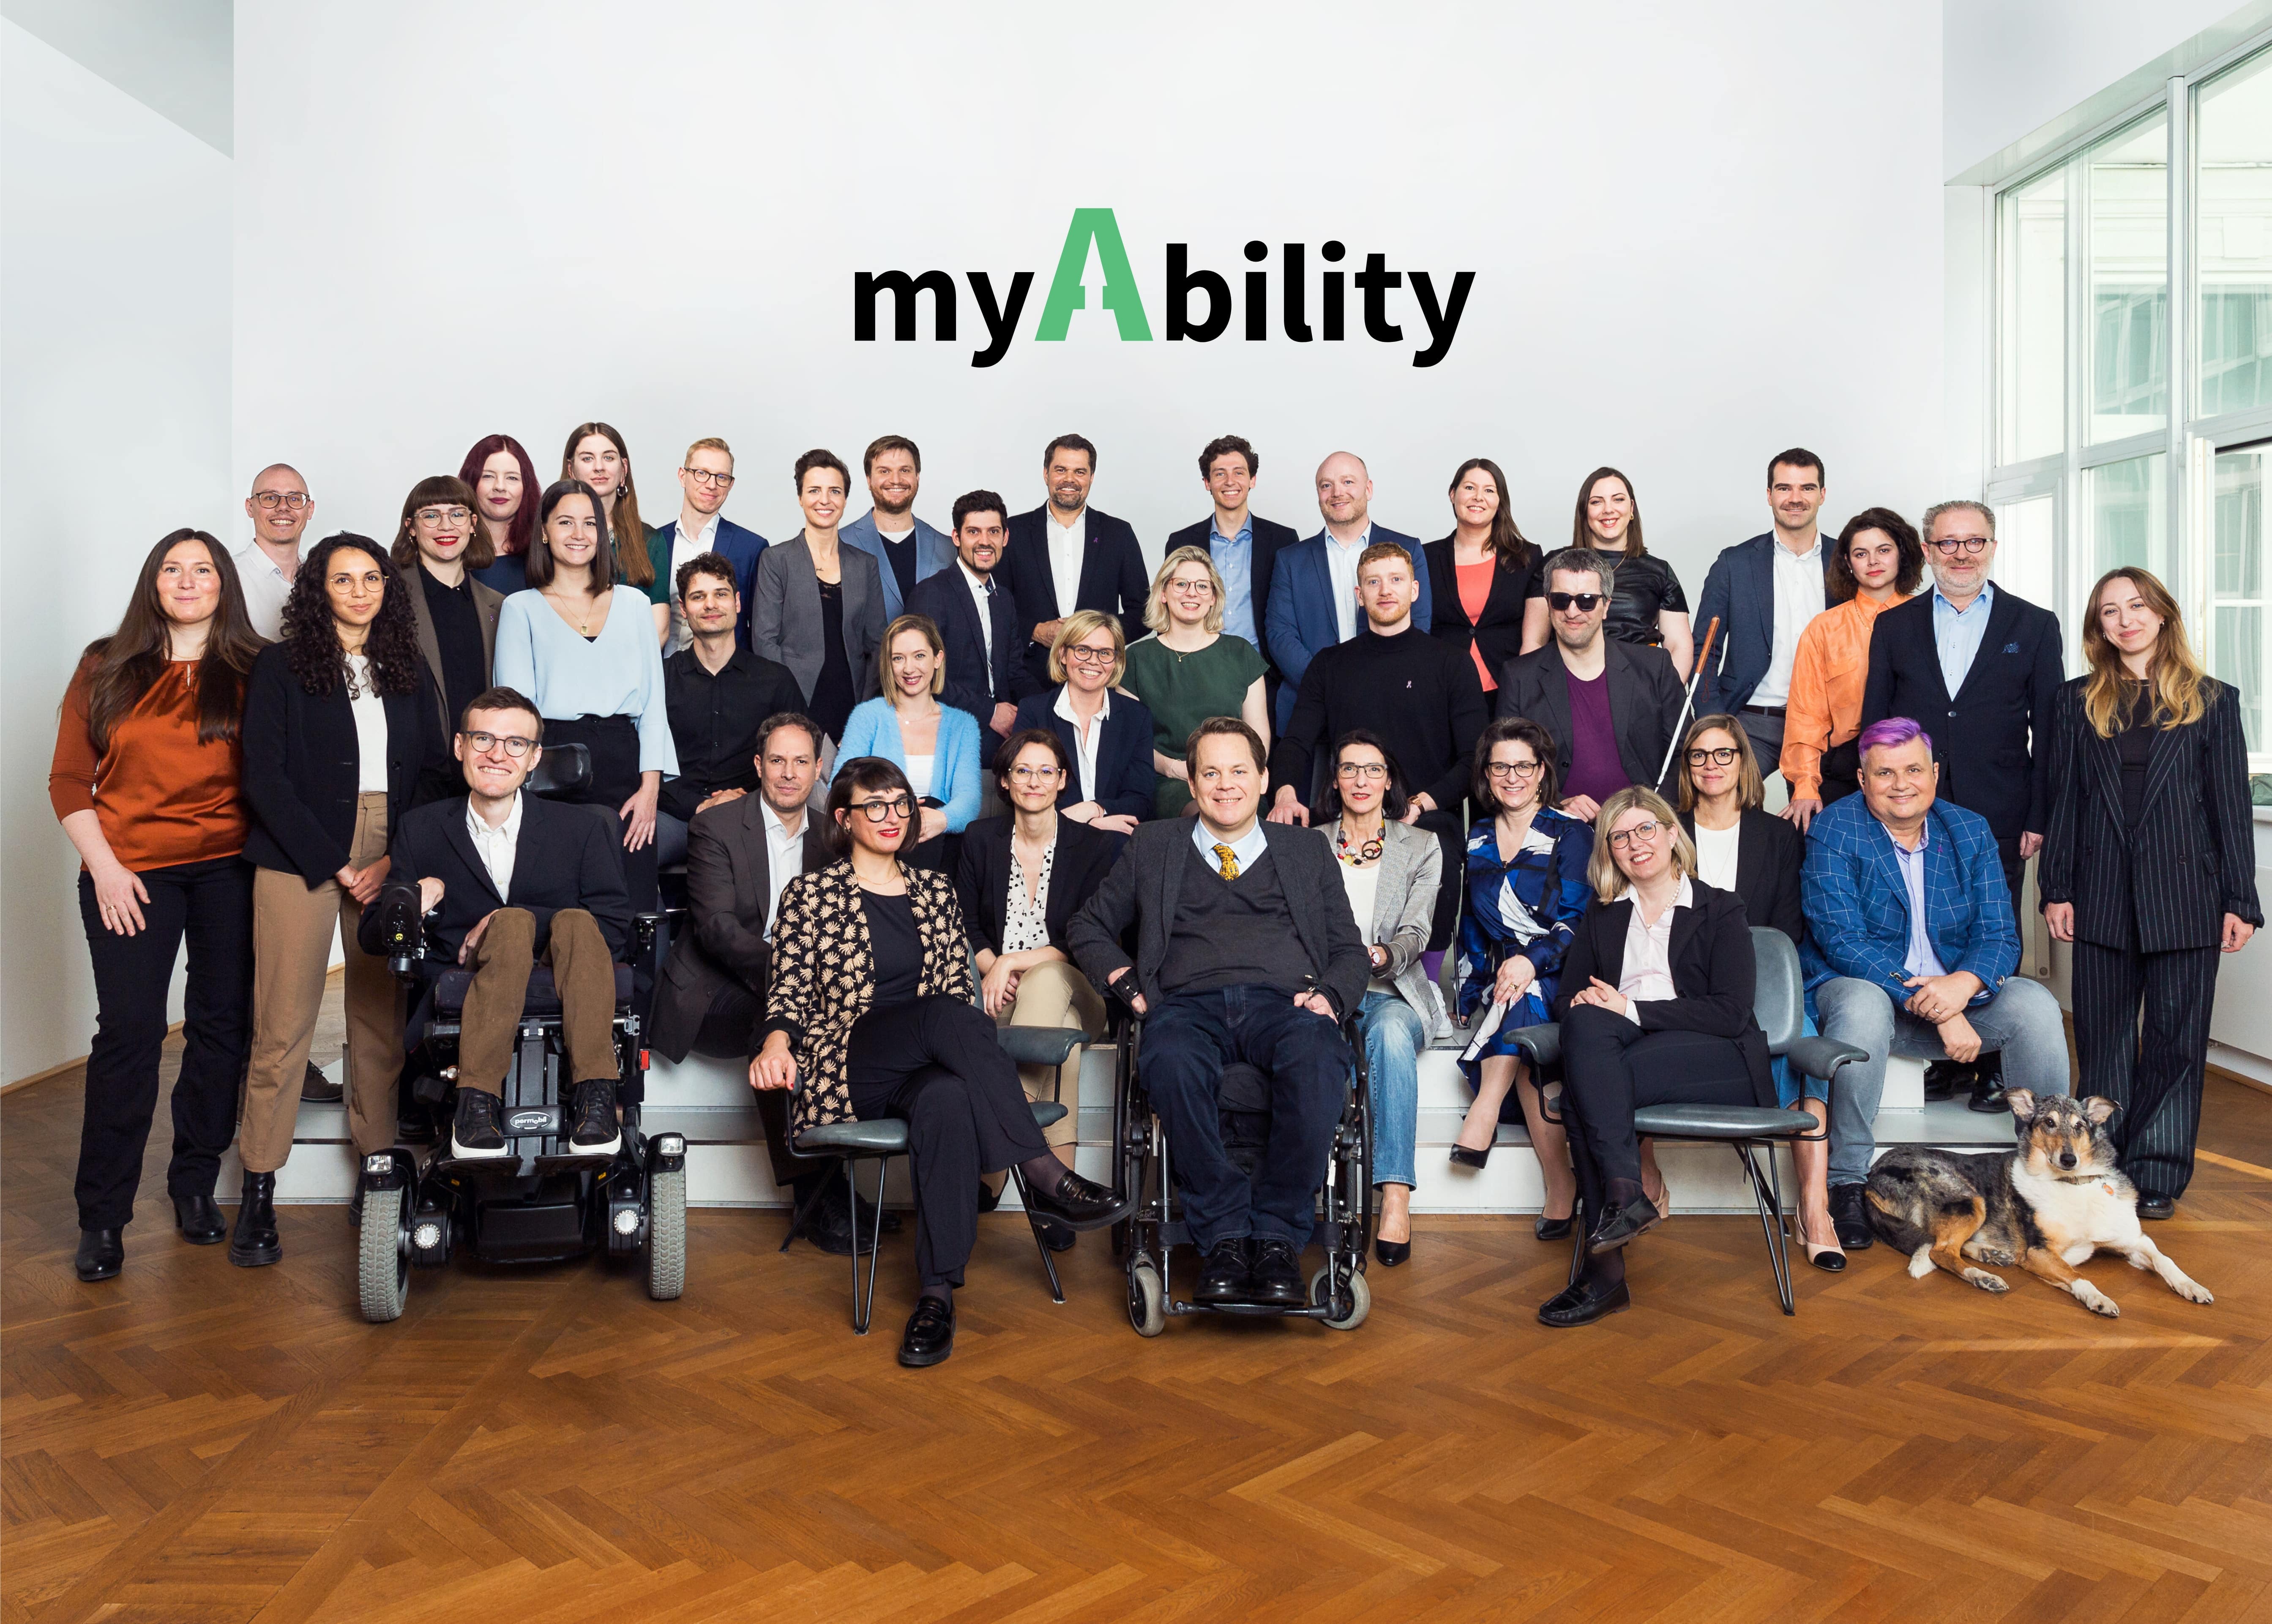 Teamfoto der myAbility Mitarbeiter und Mitarbeiterinnen